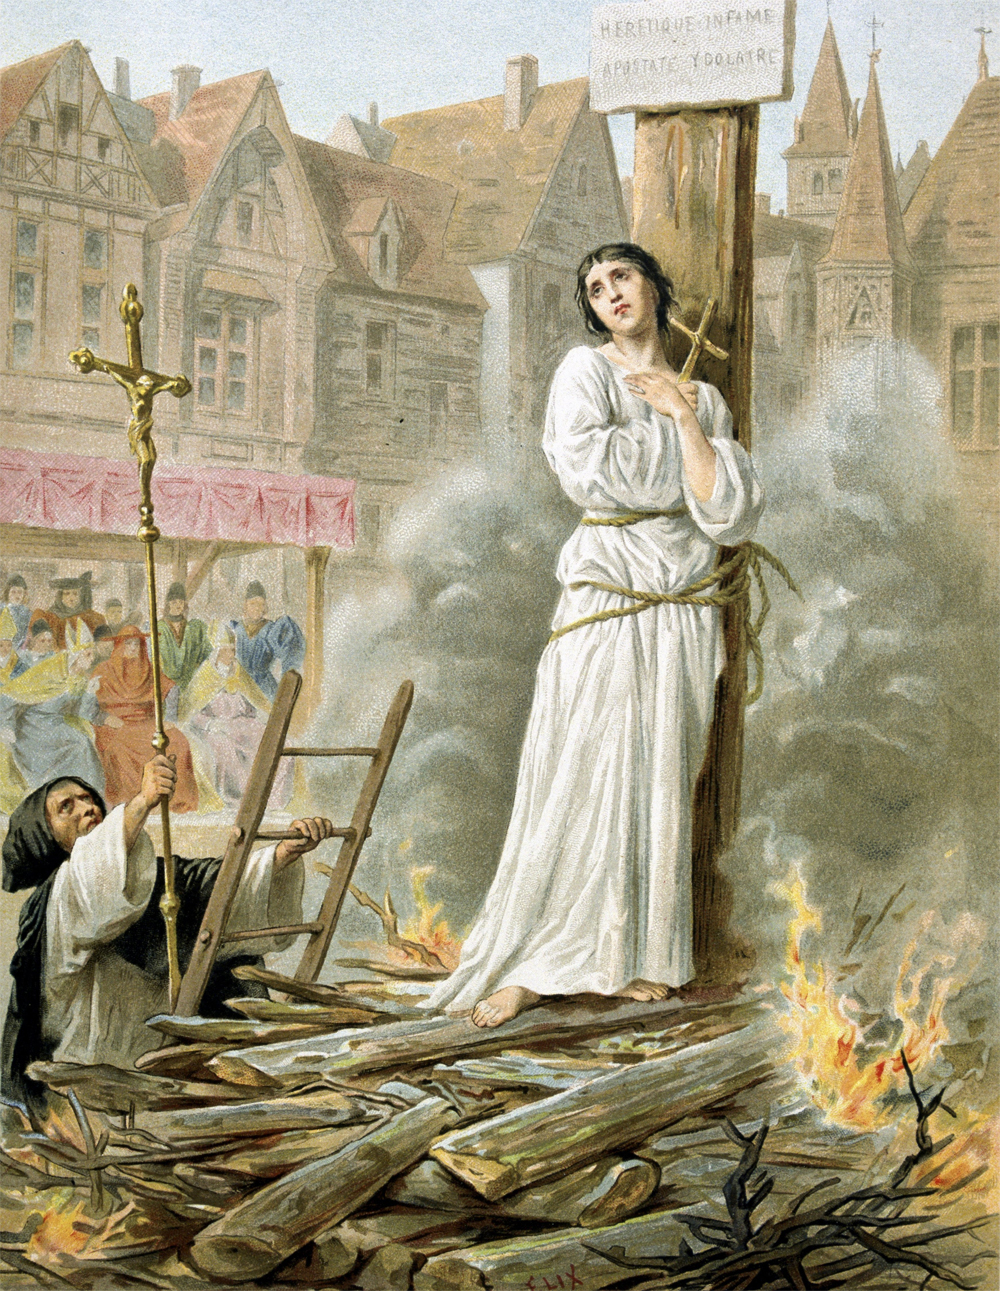 Сожжение Жанны д’Арк. Открытка XIX века.